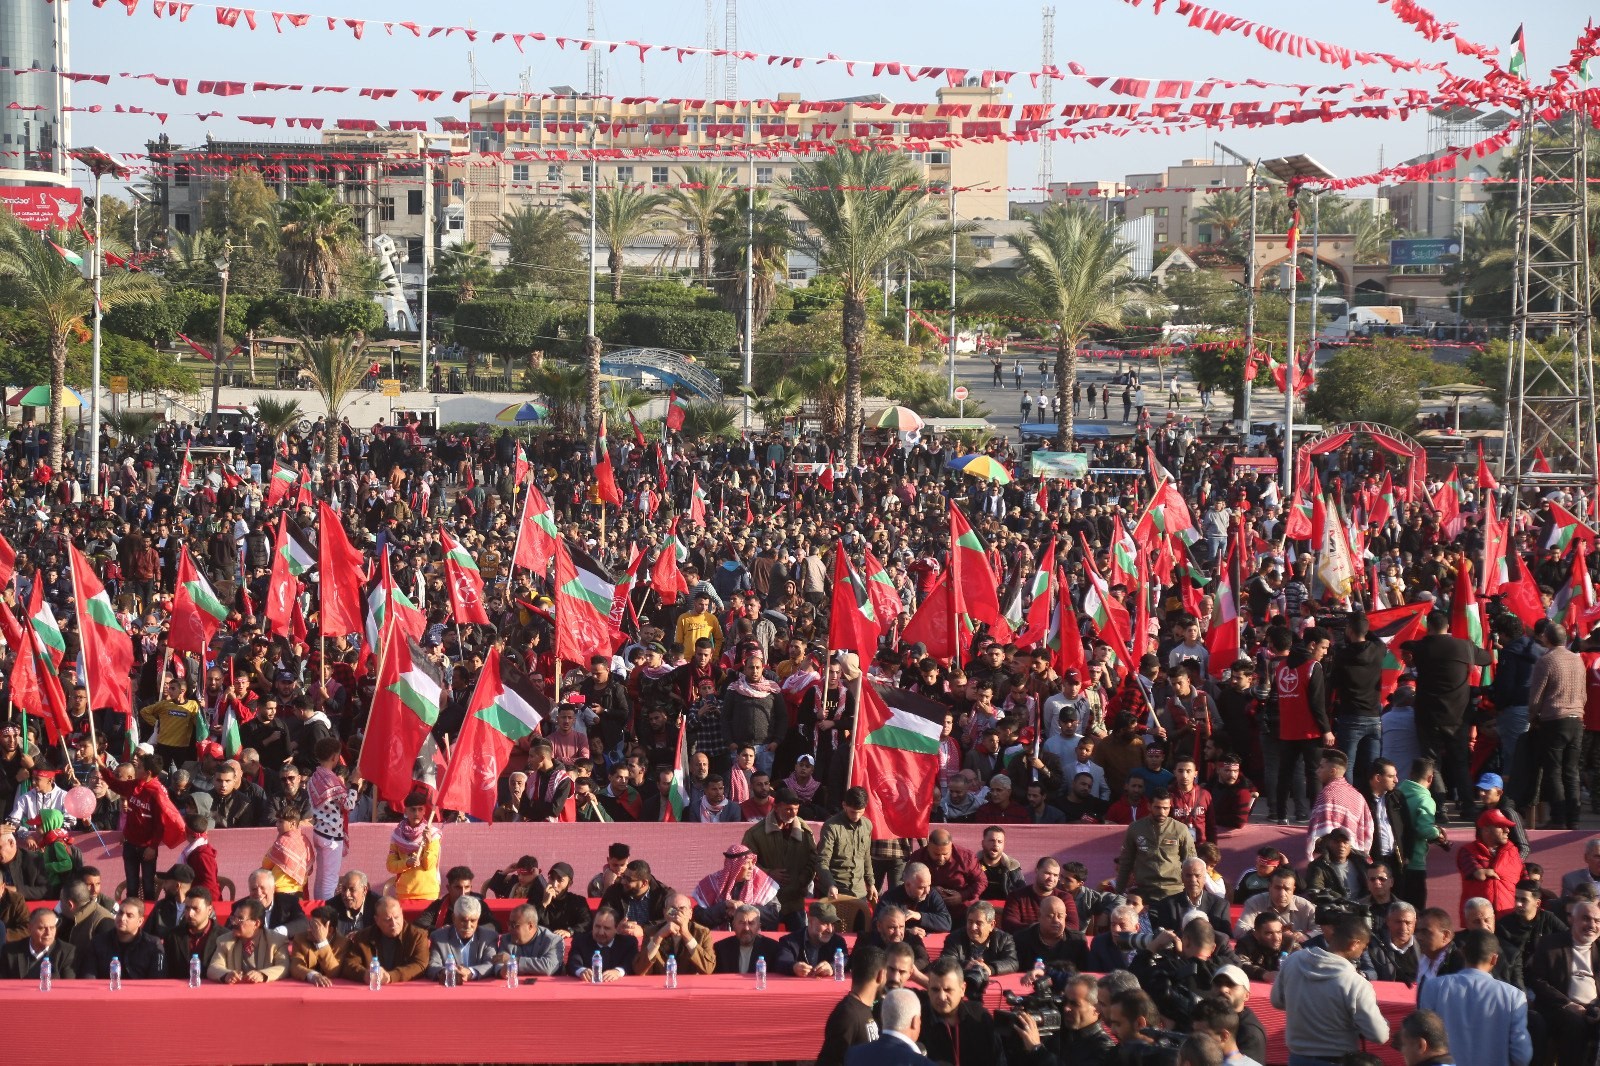 عشرات الآلاف يُشاركون في المهرجان الوطني (انطلاقتنا مقاومة) في ساحة الكتيبة بمدينة غزة لإحياء ذكرى انطلاقة الجبهة الشعبيّة لتحرير فلسطين الـ55. 76.jpg